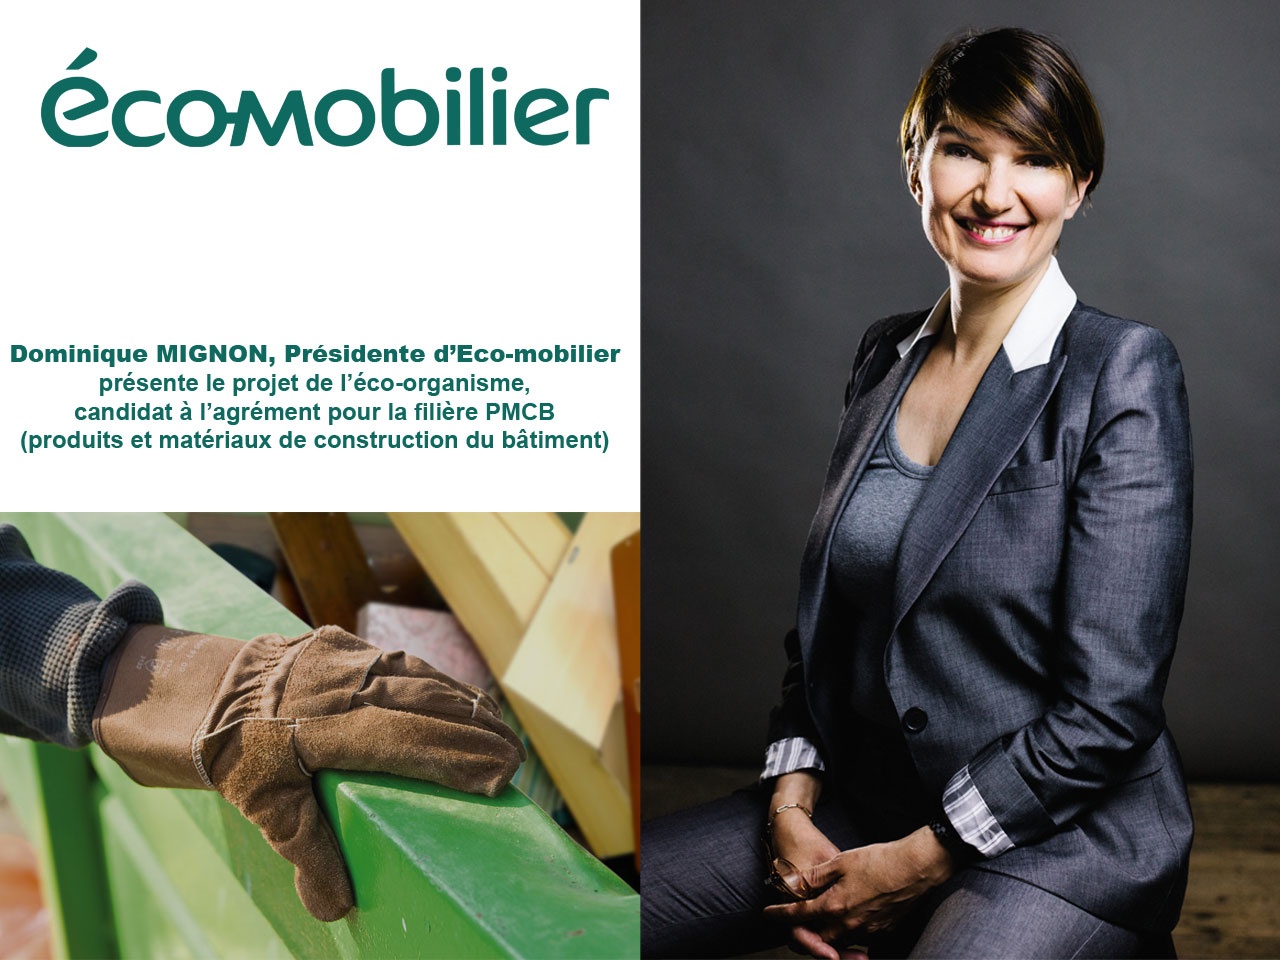 Dominique Mignon, Présidente d’Eco-mobilier, présente le projet de l’éco-organisme, candidat à l’agrément pour la filière PMCB (produits et matériaux de construction du bâtiment)